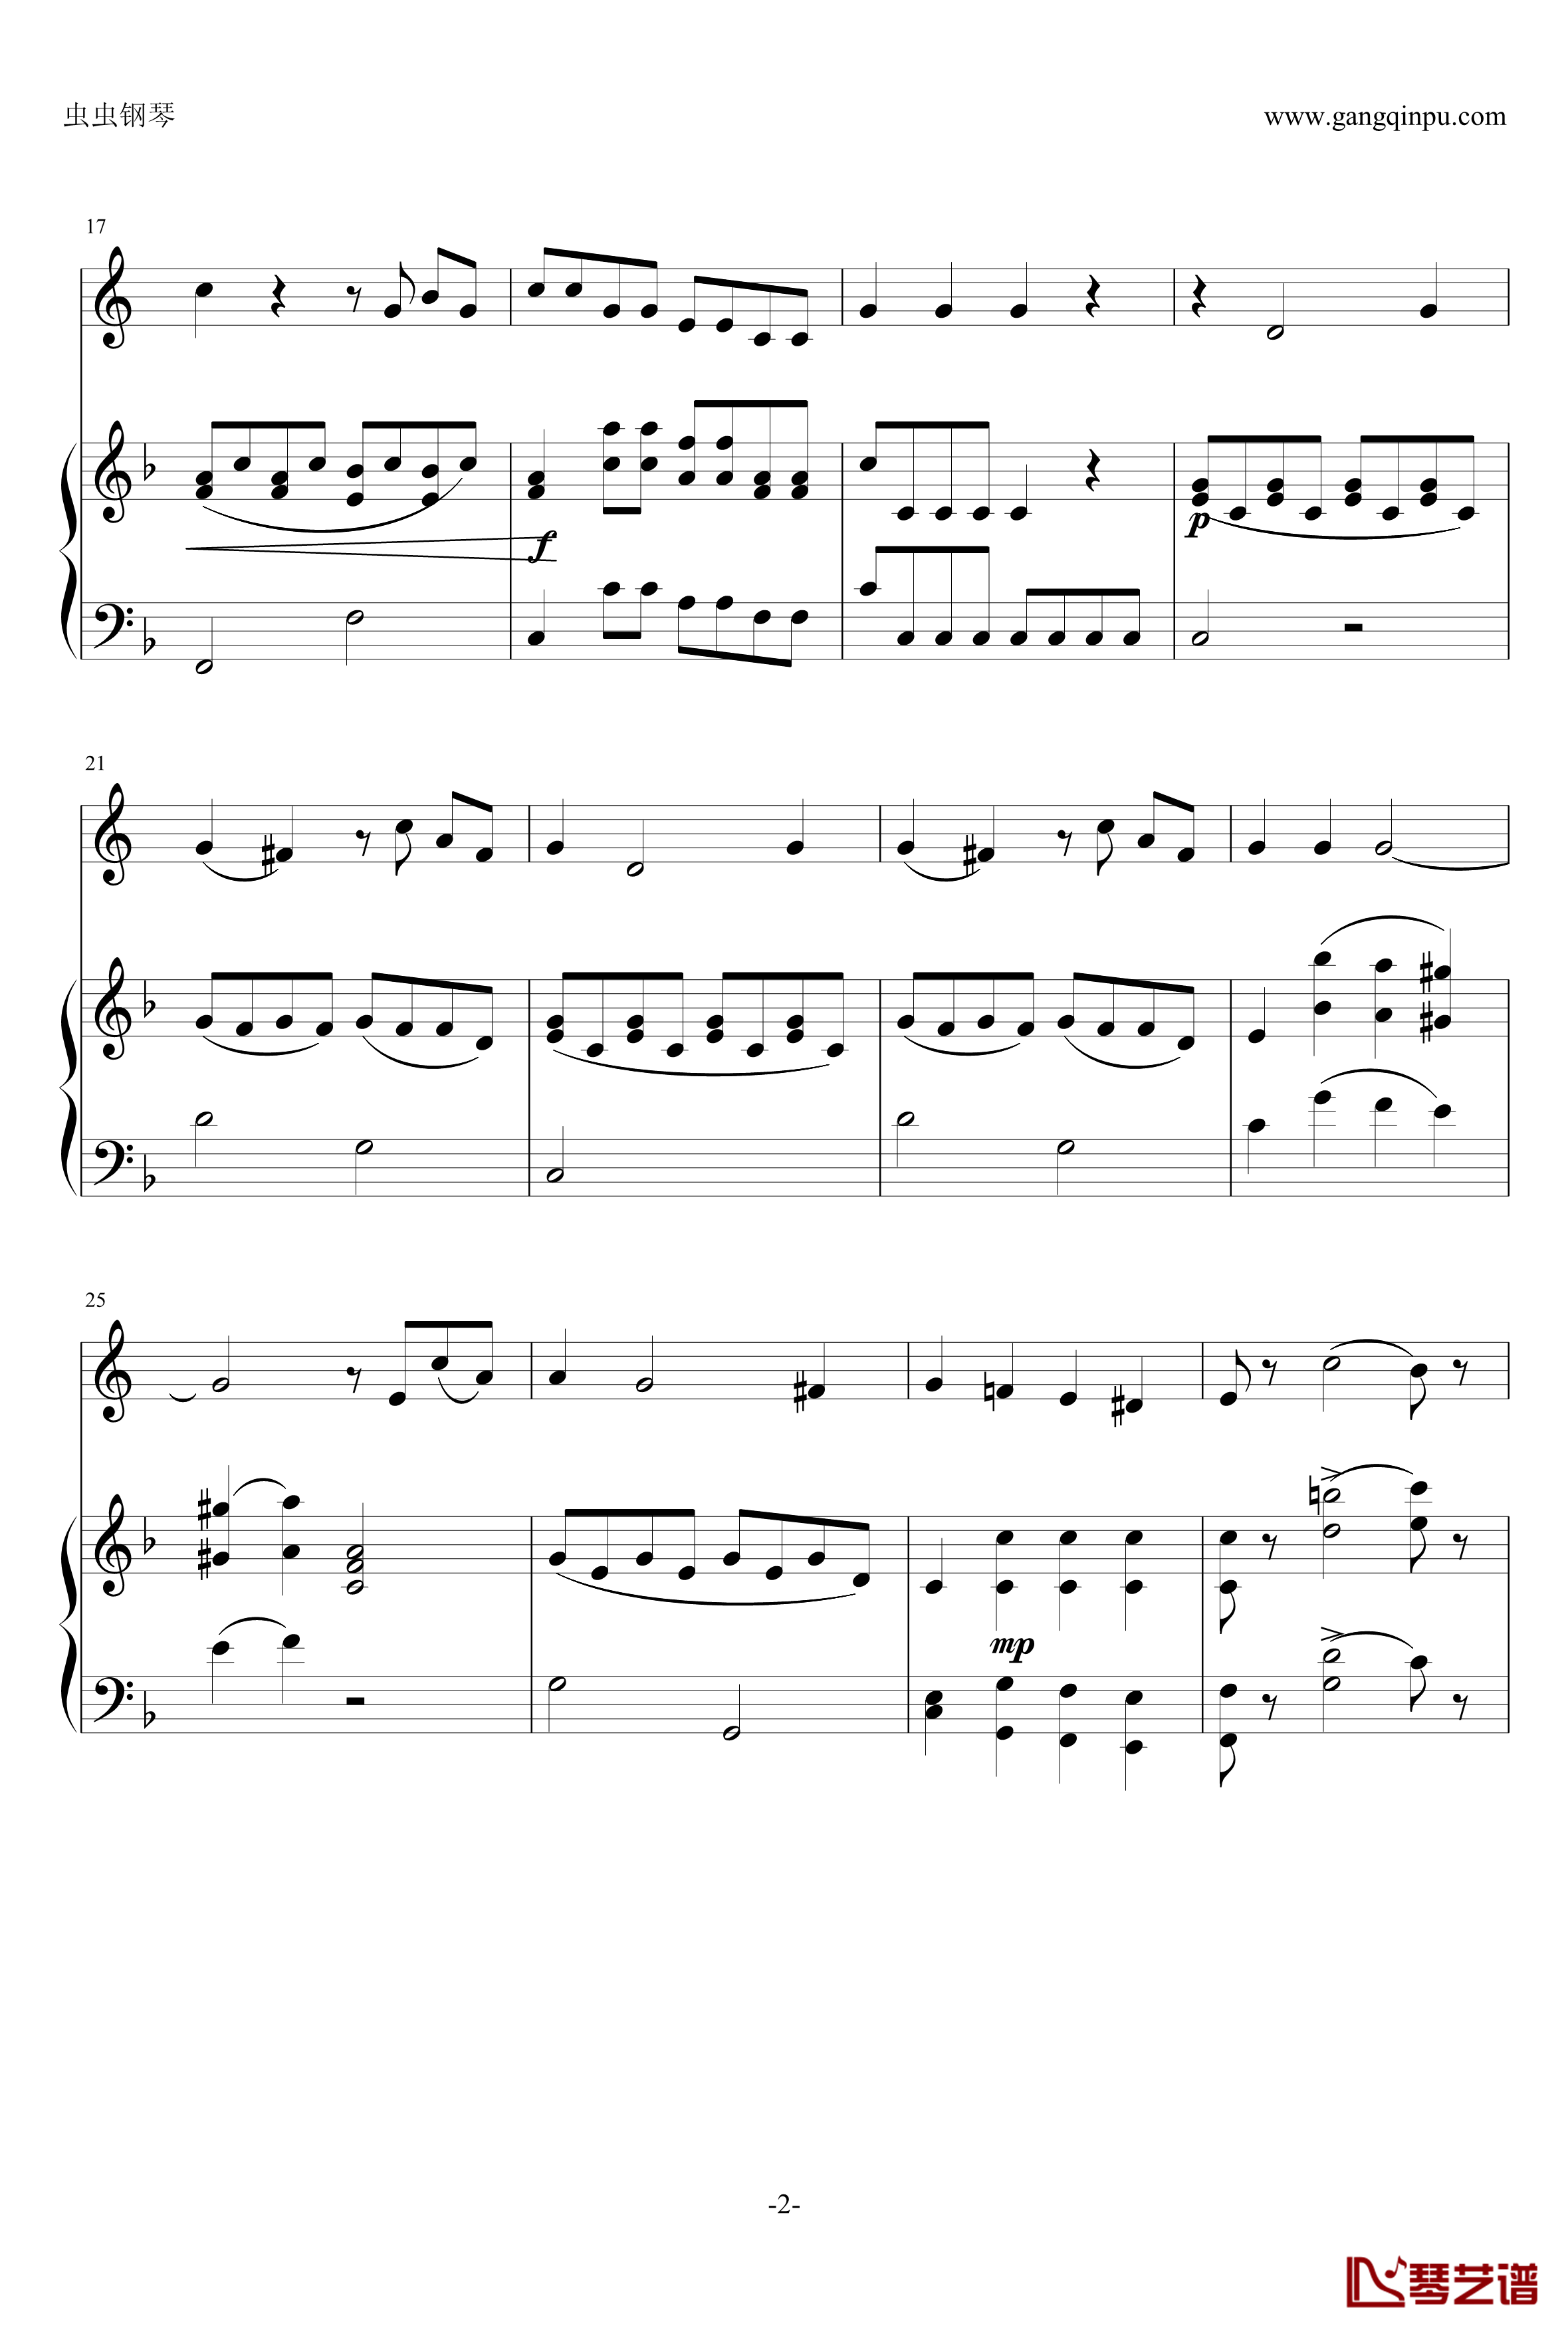 小奏鸣曲钢琴谱-莫扎特2